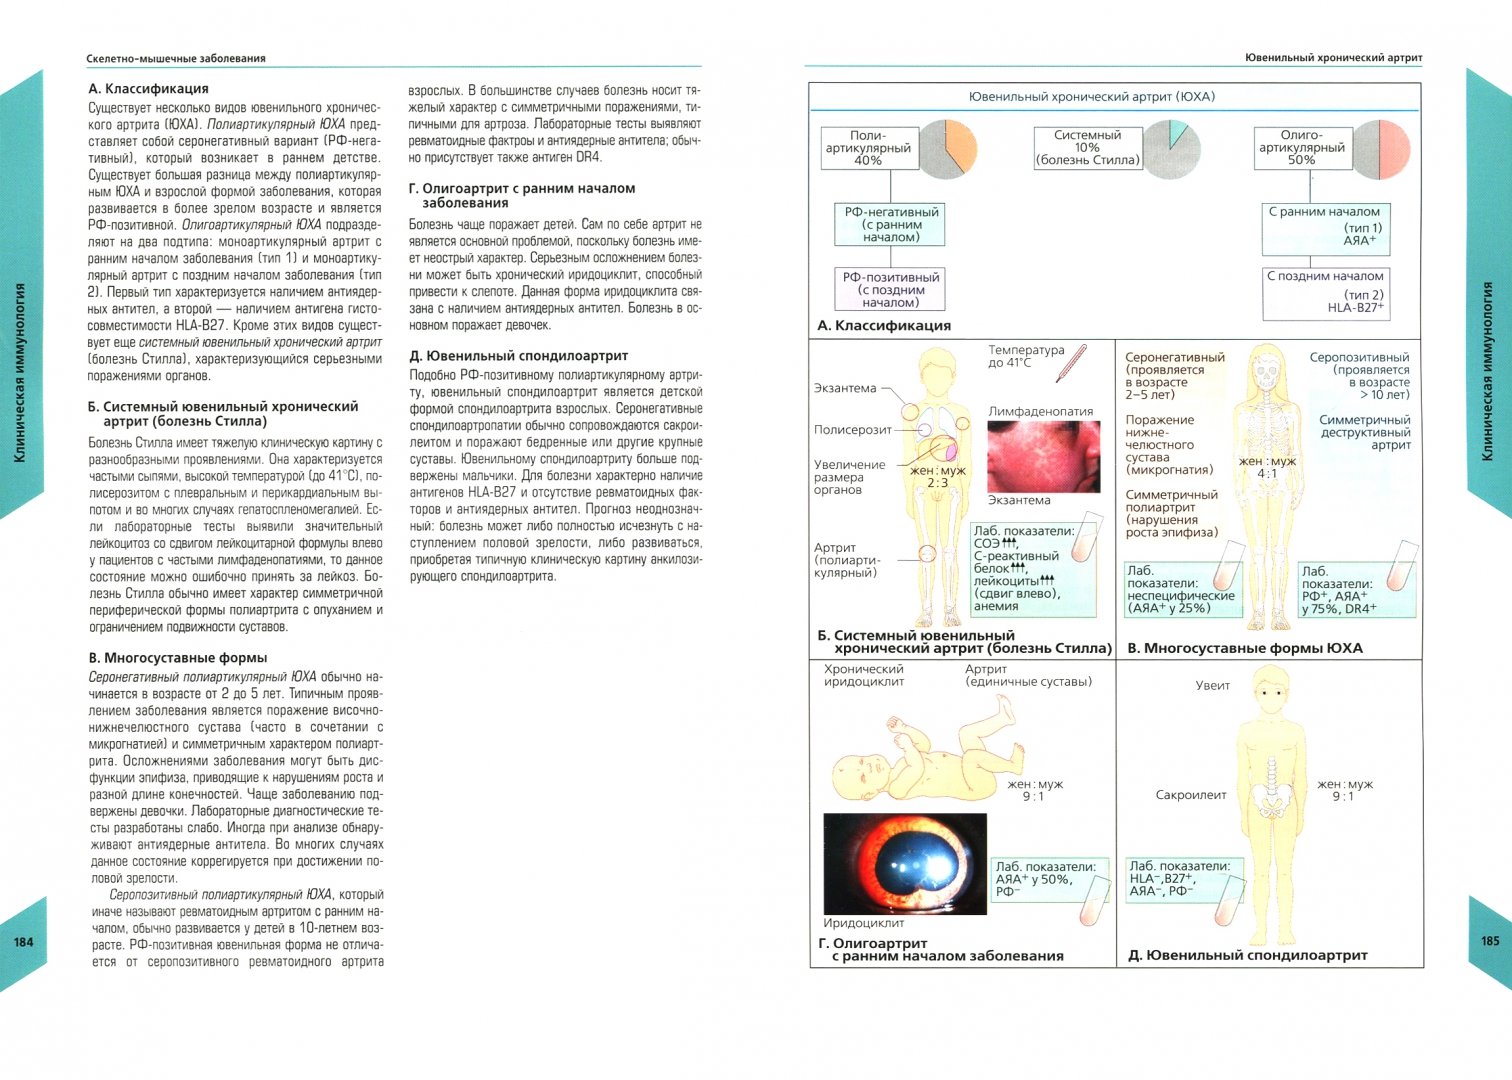 Иллюстрация 1 из 28 для Наглядная  иммунология - Бурместер, Пецутто | Лабиринт - книги. Источник: Лабиринт